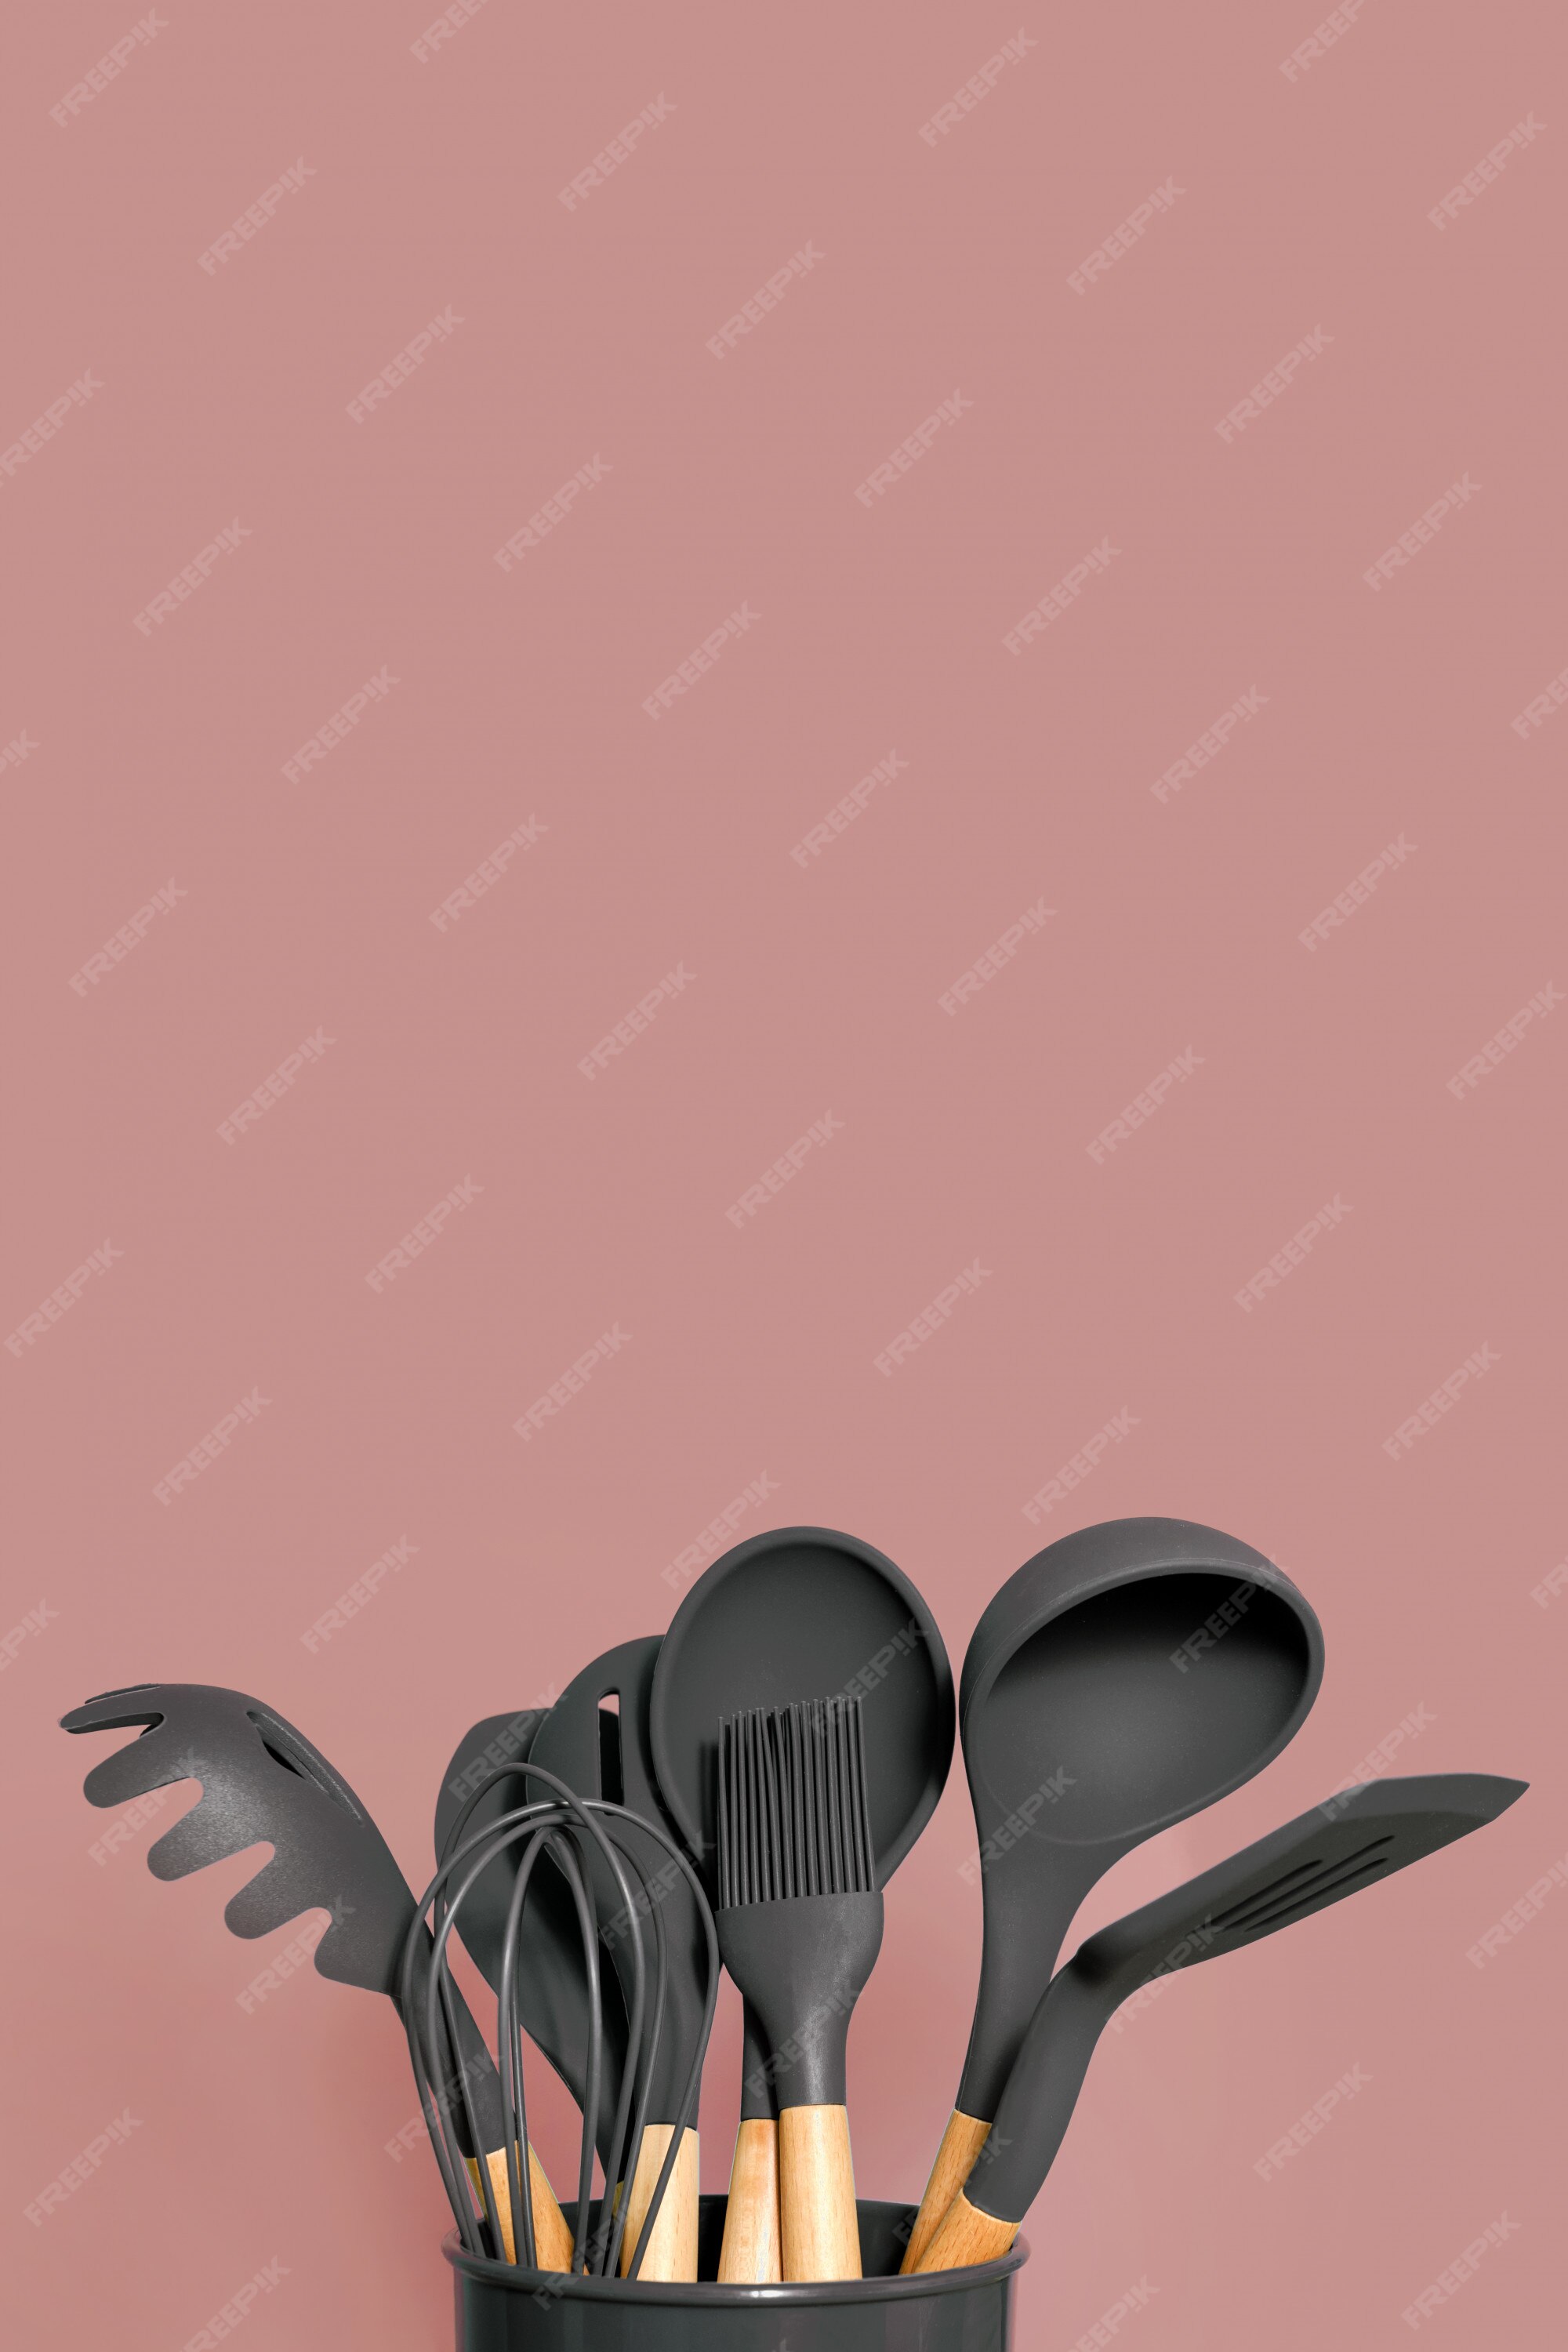 Kitchen utensils background with copyspace, home kitchen decor